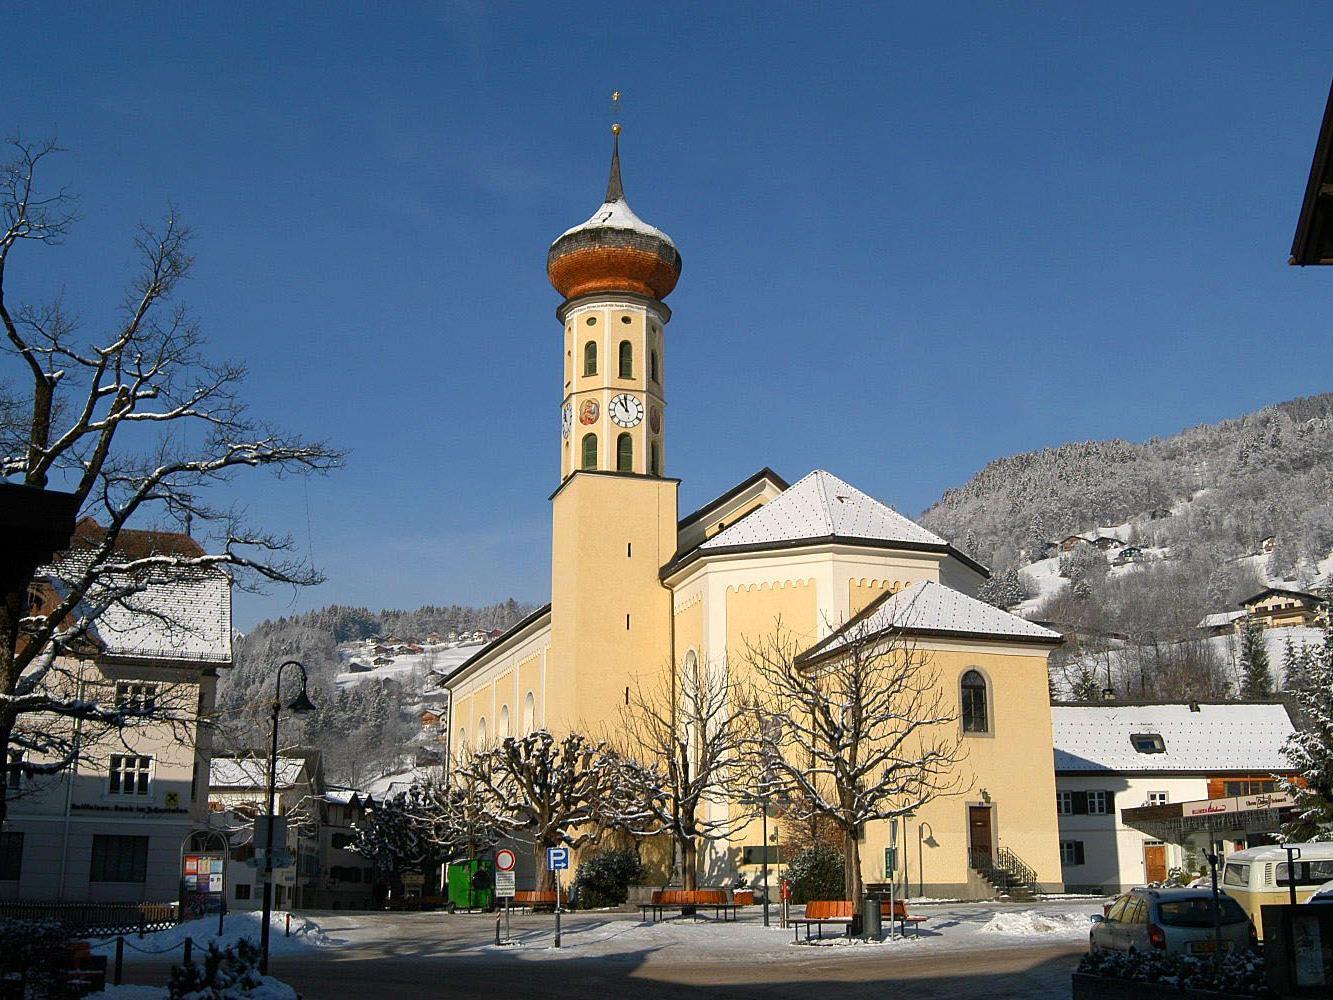 In der Schrunser Kirche wird am Sonntag, dem 16. Dezember 2012 das Patrozinium St. Jodok gefeiert.